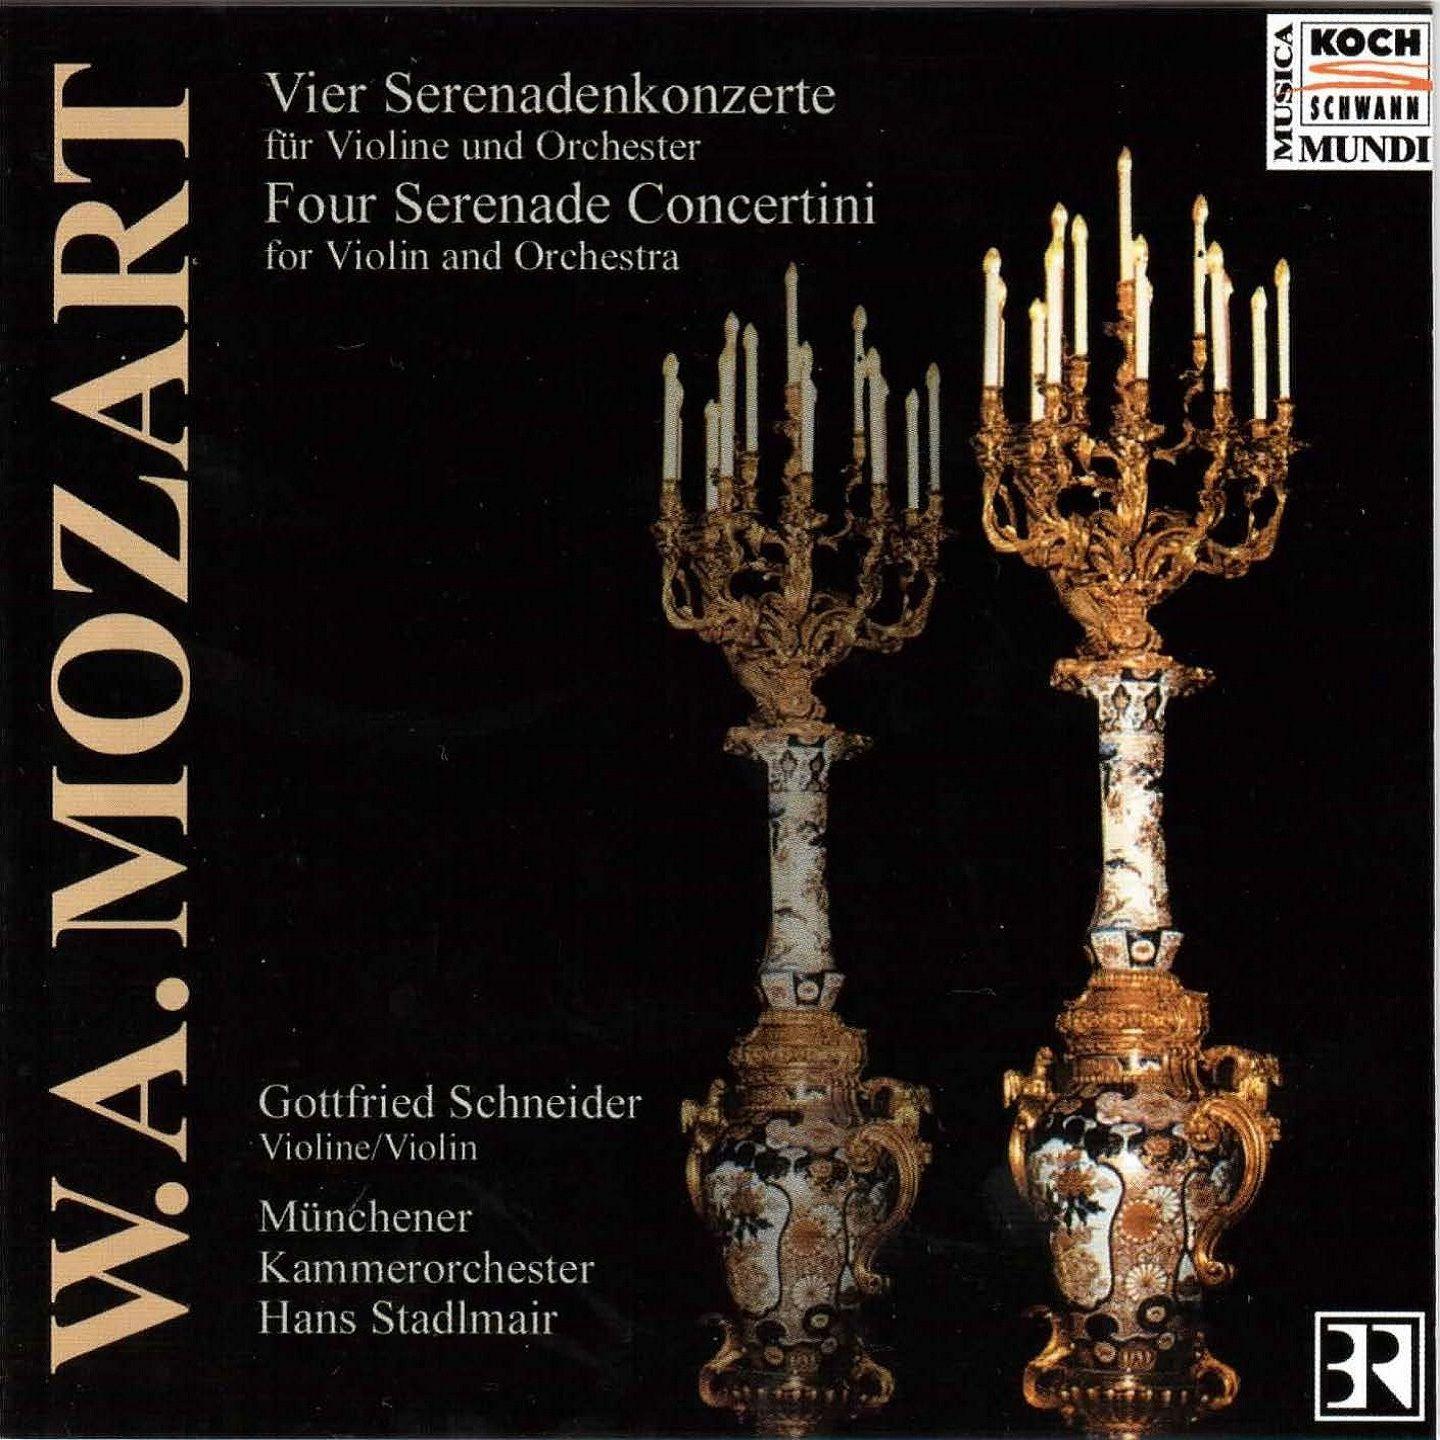 Concertino from Serenade No.7 in G Major, K.250 "Haffner": III. Menuetto. Trio